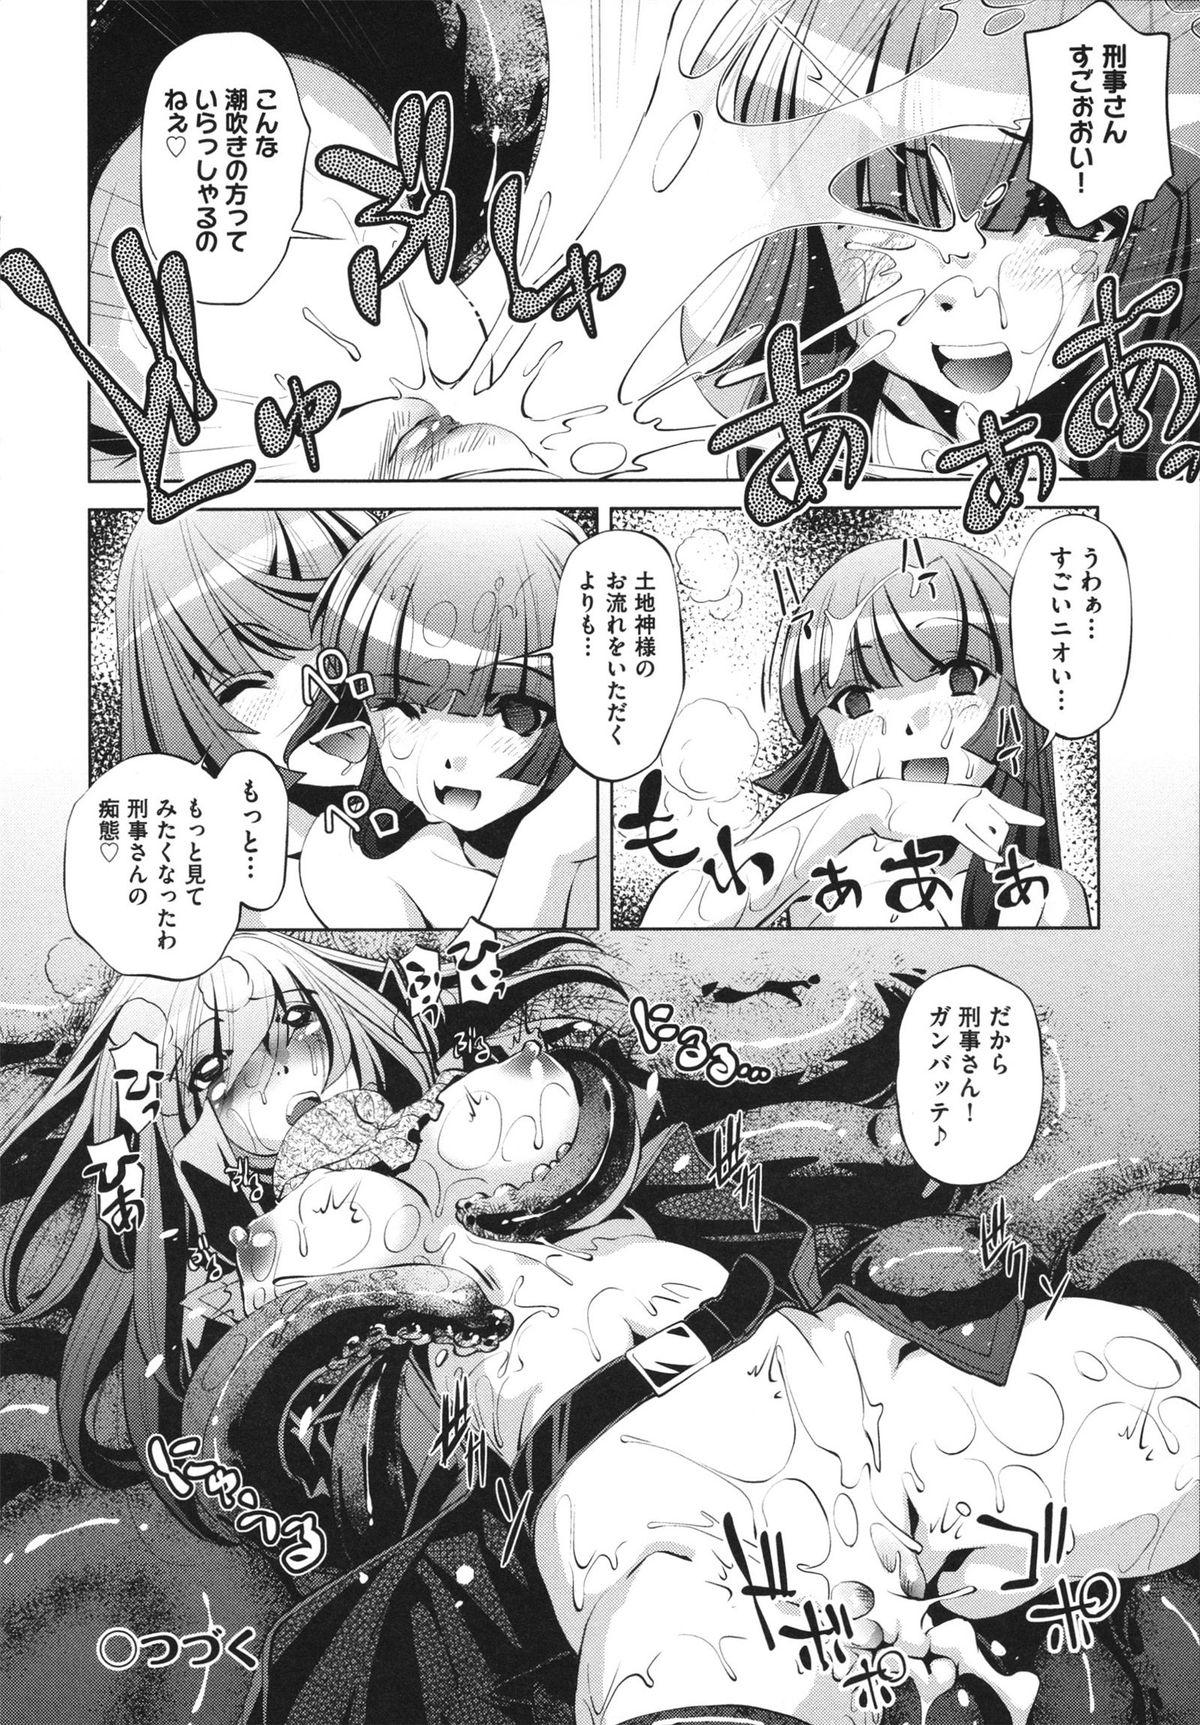 [Ootori Ryuuji] Shokushu wa Yawarakana Chibusa ni Makitsuki Onna-tachi no Ana wo Kakimidasu - Feeler coils around a soft breast and violates women's hole. 123